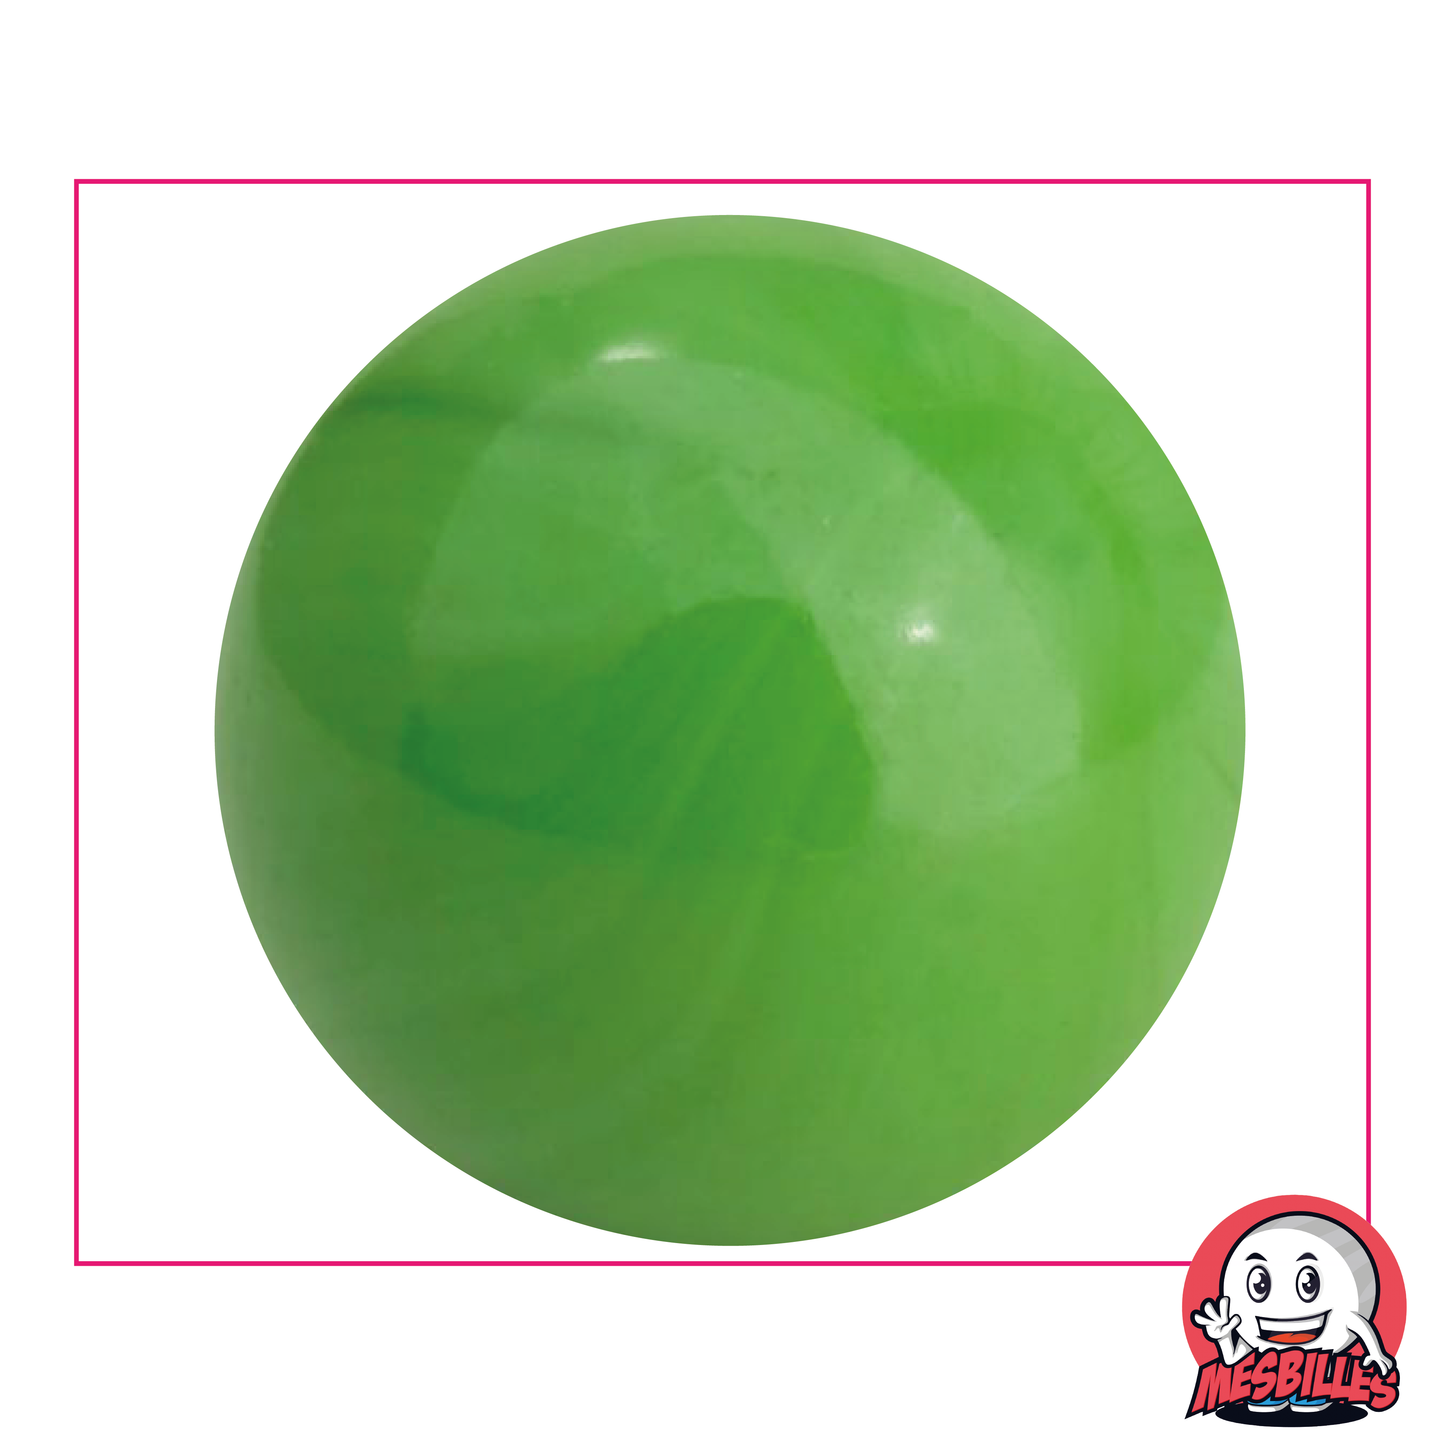 Bille Perle Opaque Verte 50mm Bille en verre | MesBilles - MesBilles